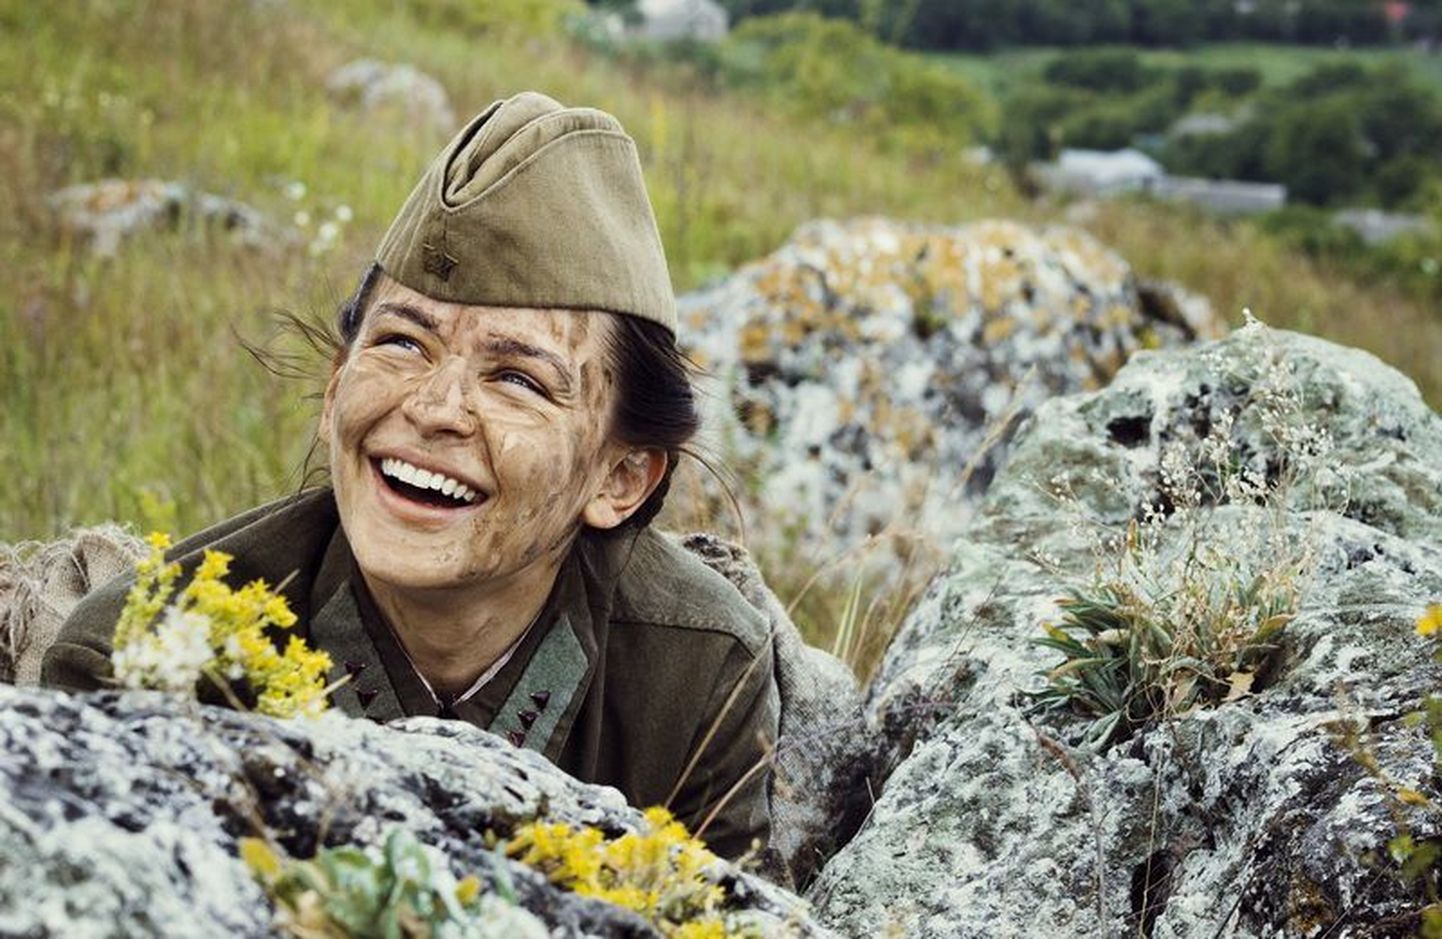 Фильм «Битва за Севастополь» с Юлией Пересильд в роли легендарной женщины-снайпера Людмилы Павличенко выходит на российские экраны.